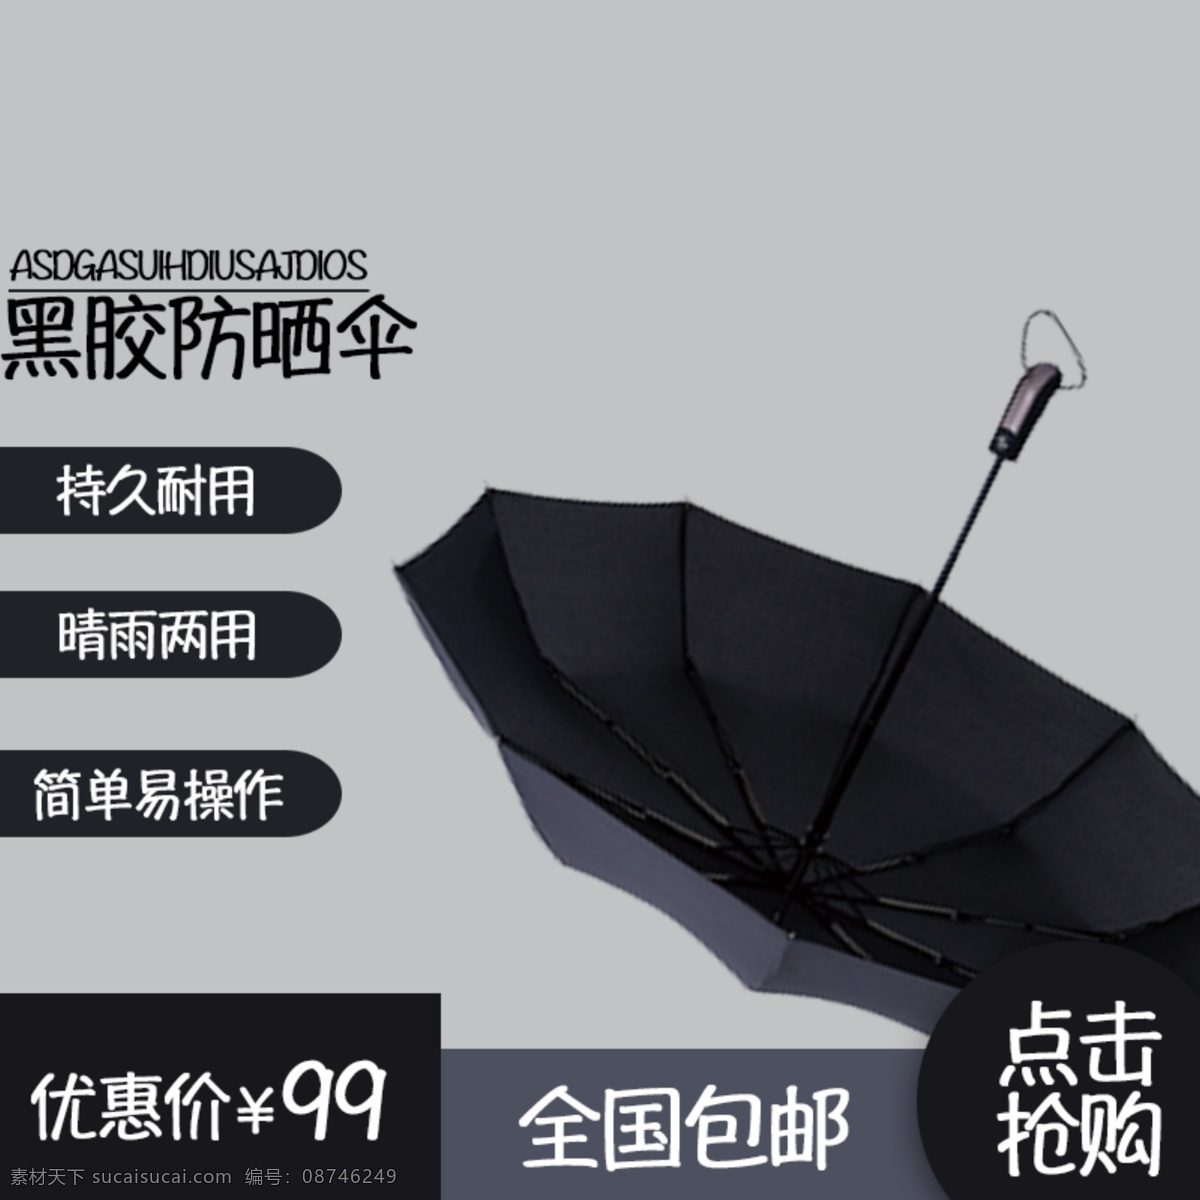 雨伞主图 淘宝主图 电商主图 雨伞 黑胶防晒伞 淘宝界面设计